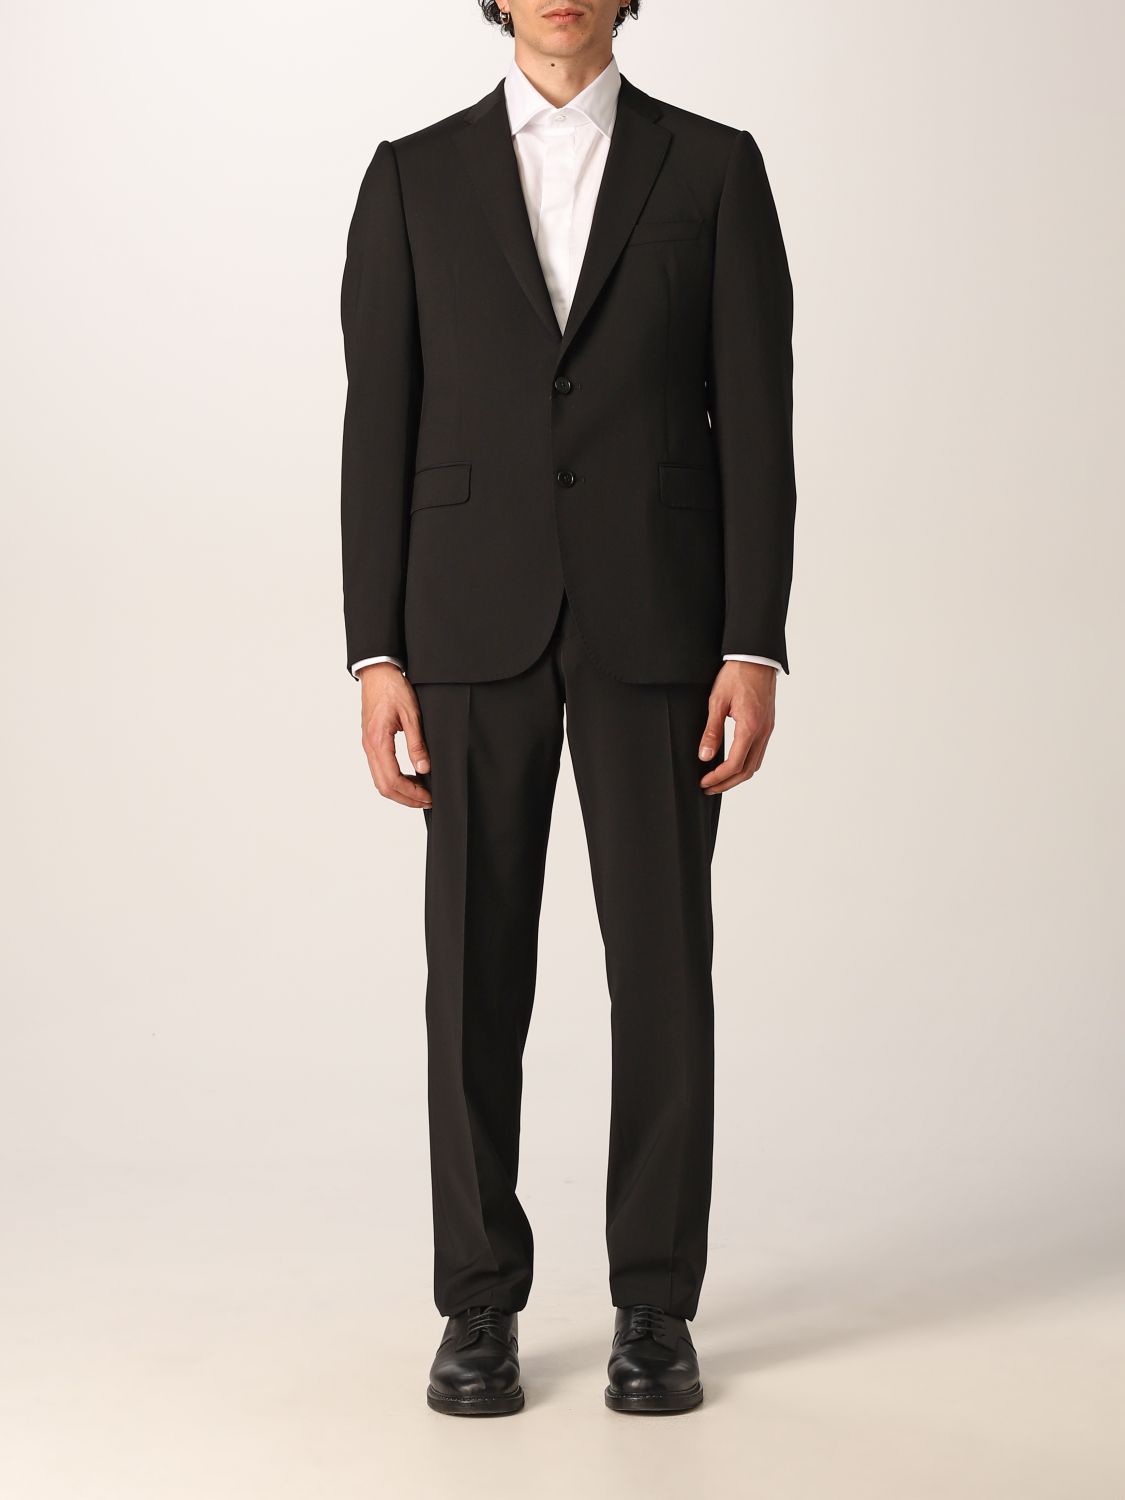 EMPORIO ARMANI: Elegant suit in virgin wool - Black | Emporio Armani ...